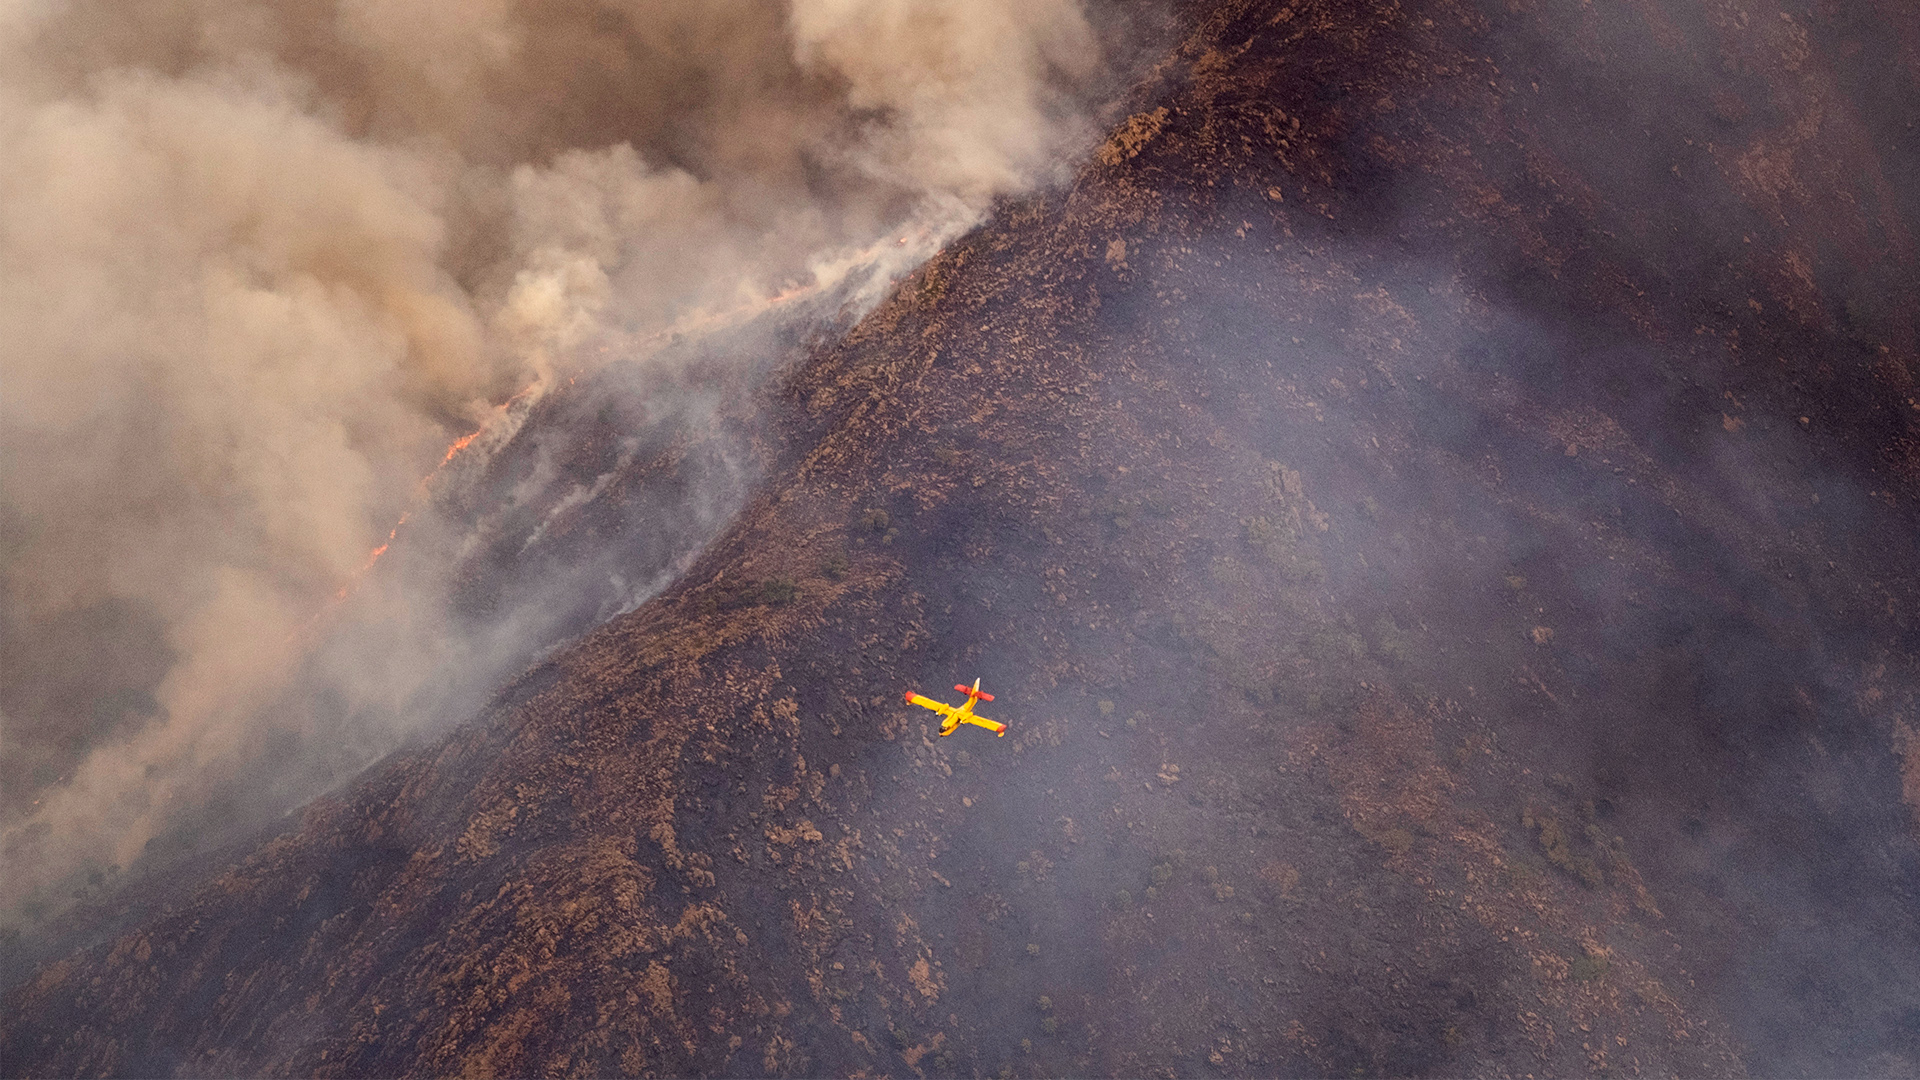 Ein Wasserflugzeug überfliegt einen Waldbrand in der spanischen Provinz Malaga. | dpa